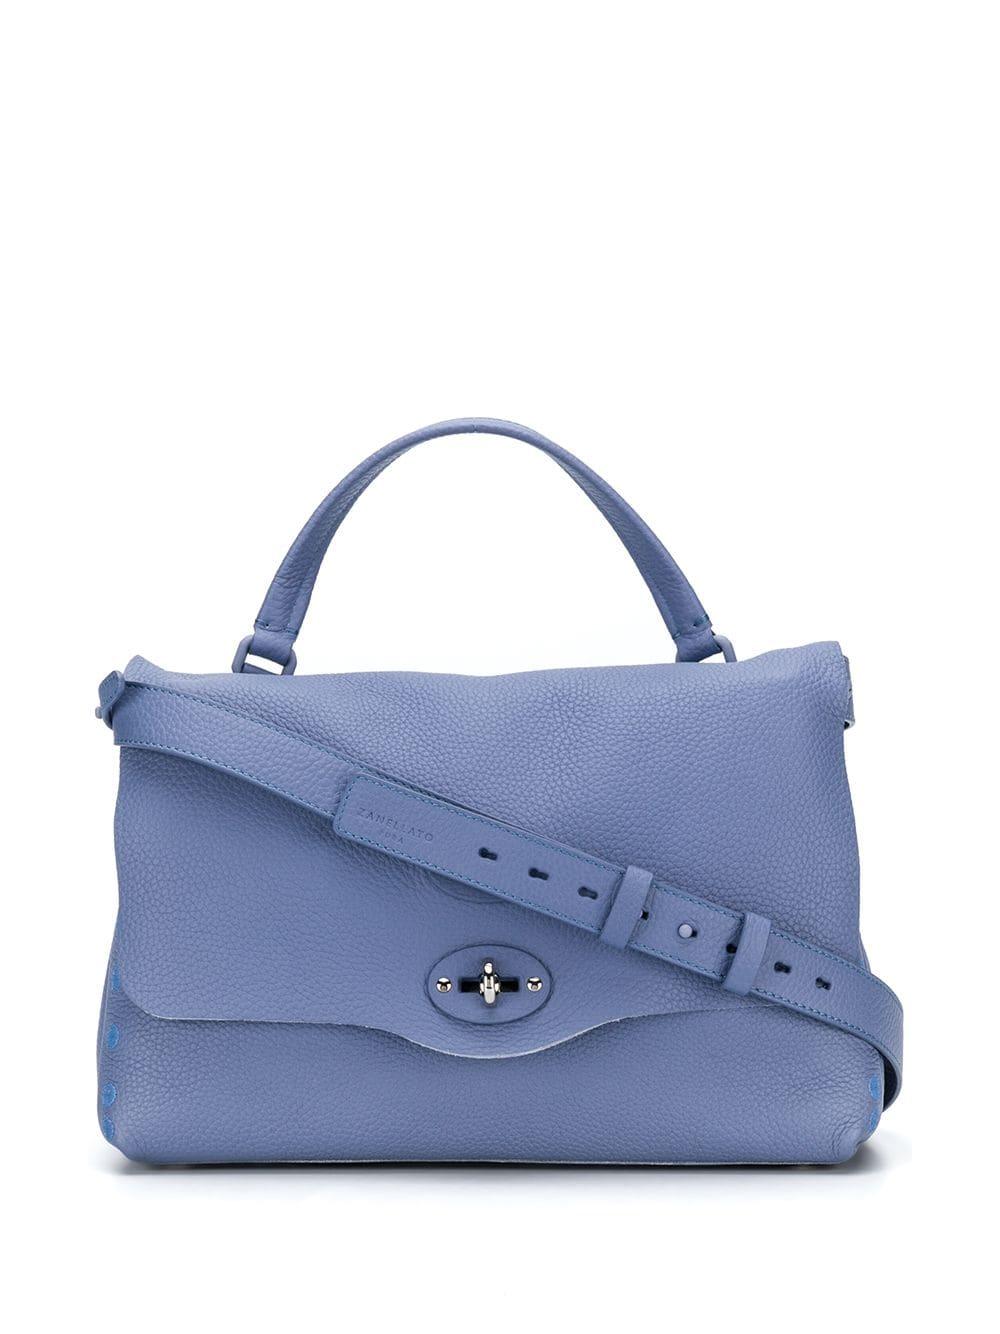 Zanellato Leather Postina Tote Bag in Blue - Save 22% - Lyst